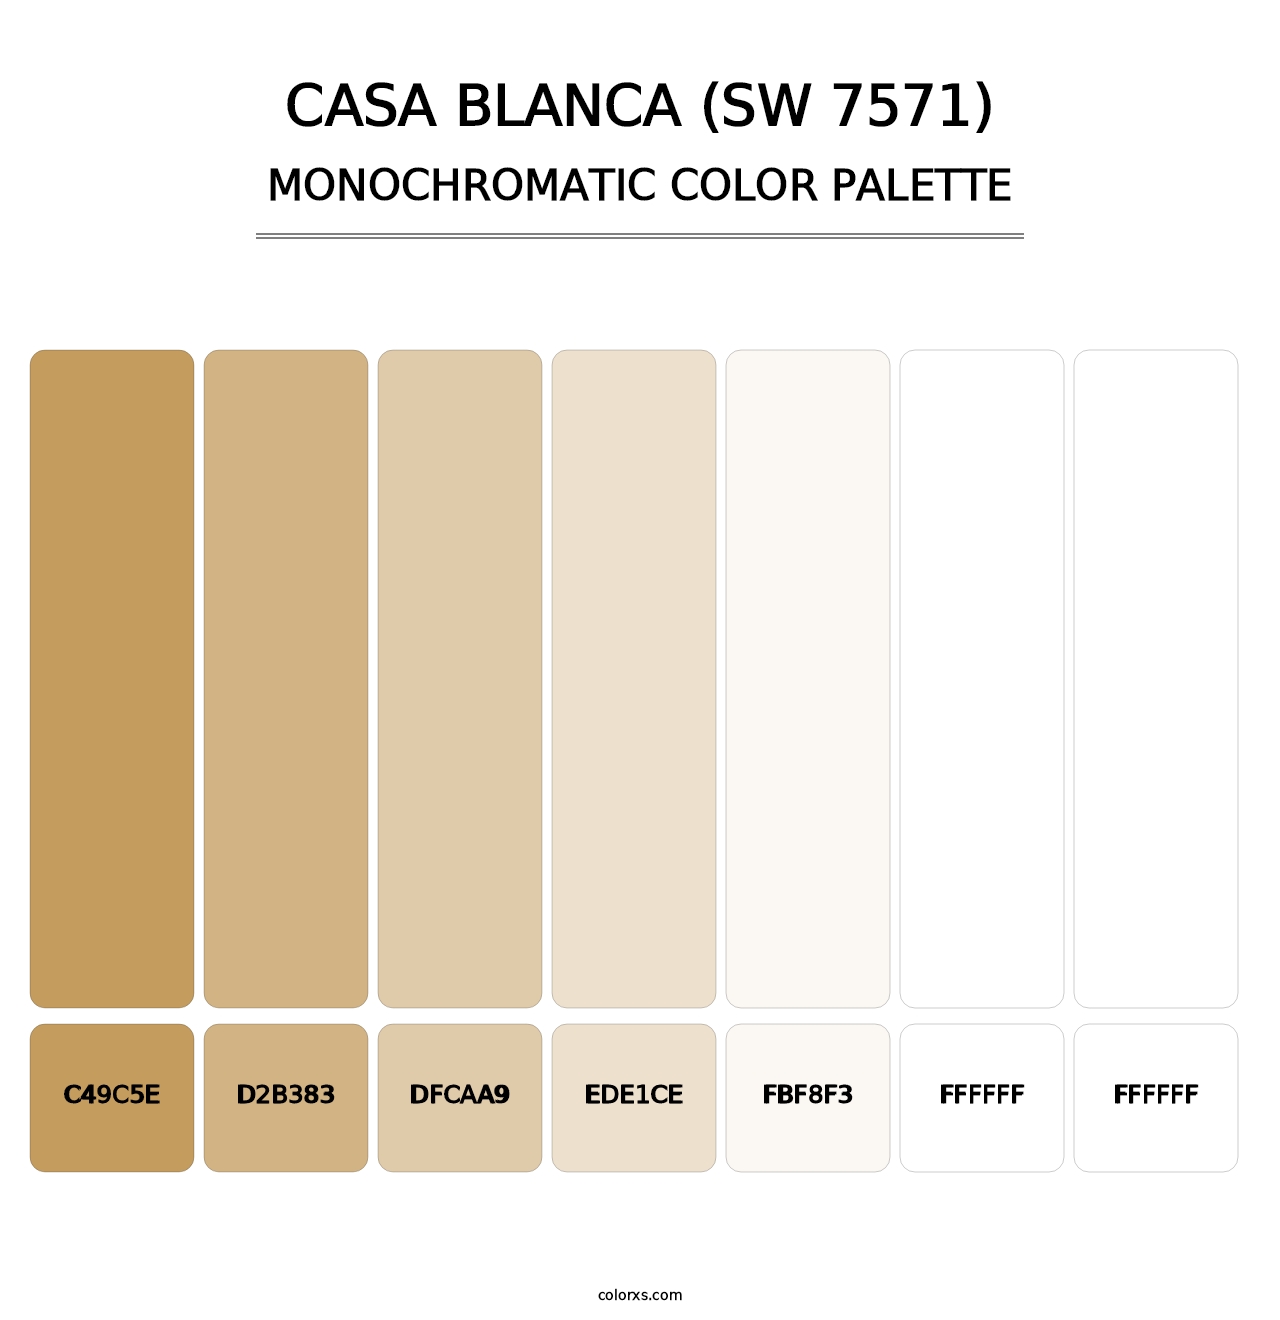 Casa Blanca (SW 7571) - Monochromatic Color Palette